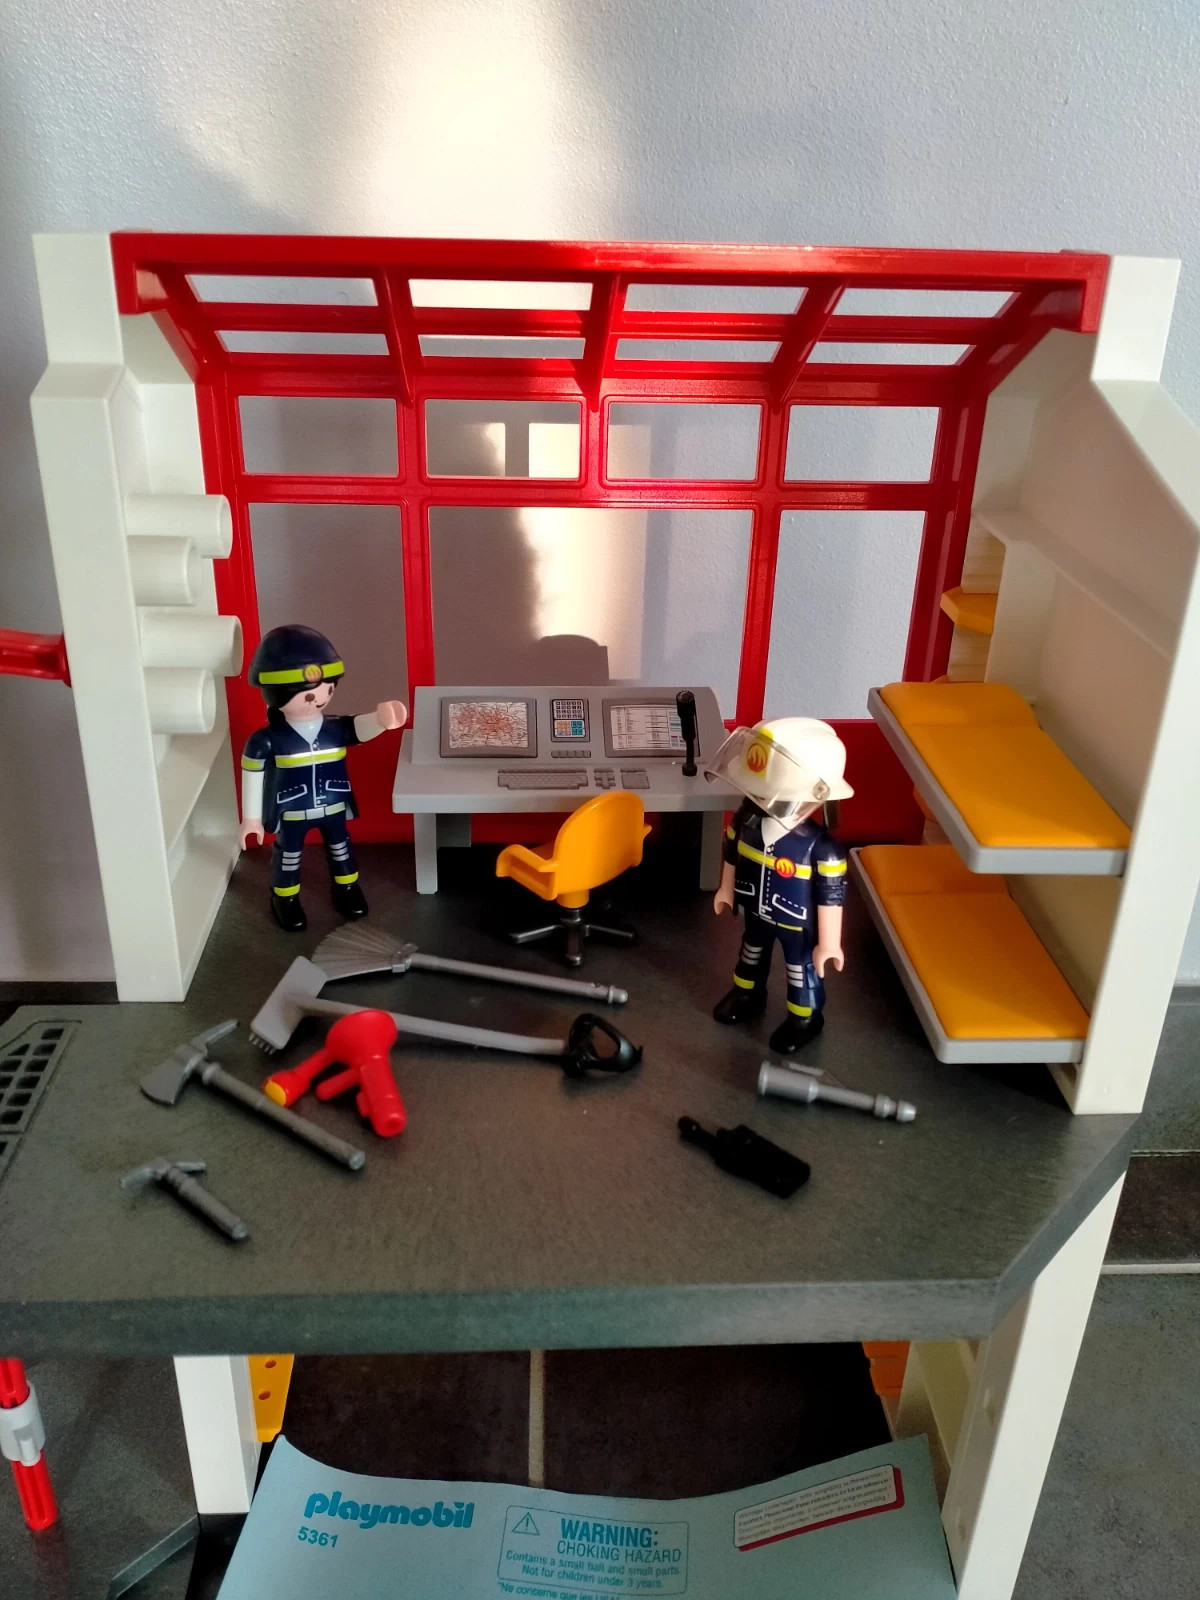 Playmobil 5361 : La caserne de pompier avec alarme (city action) 